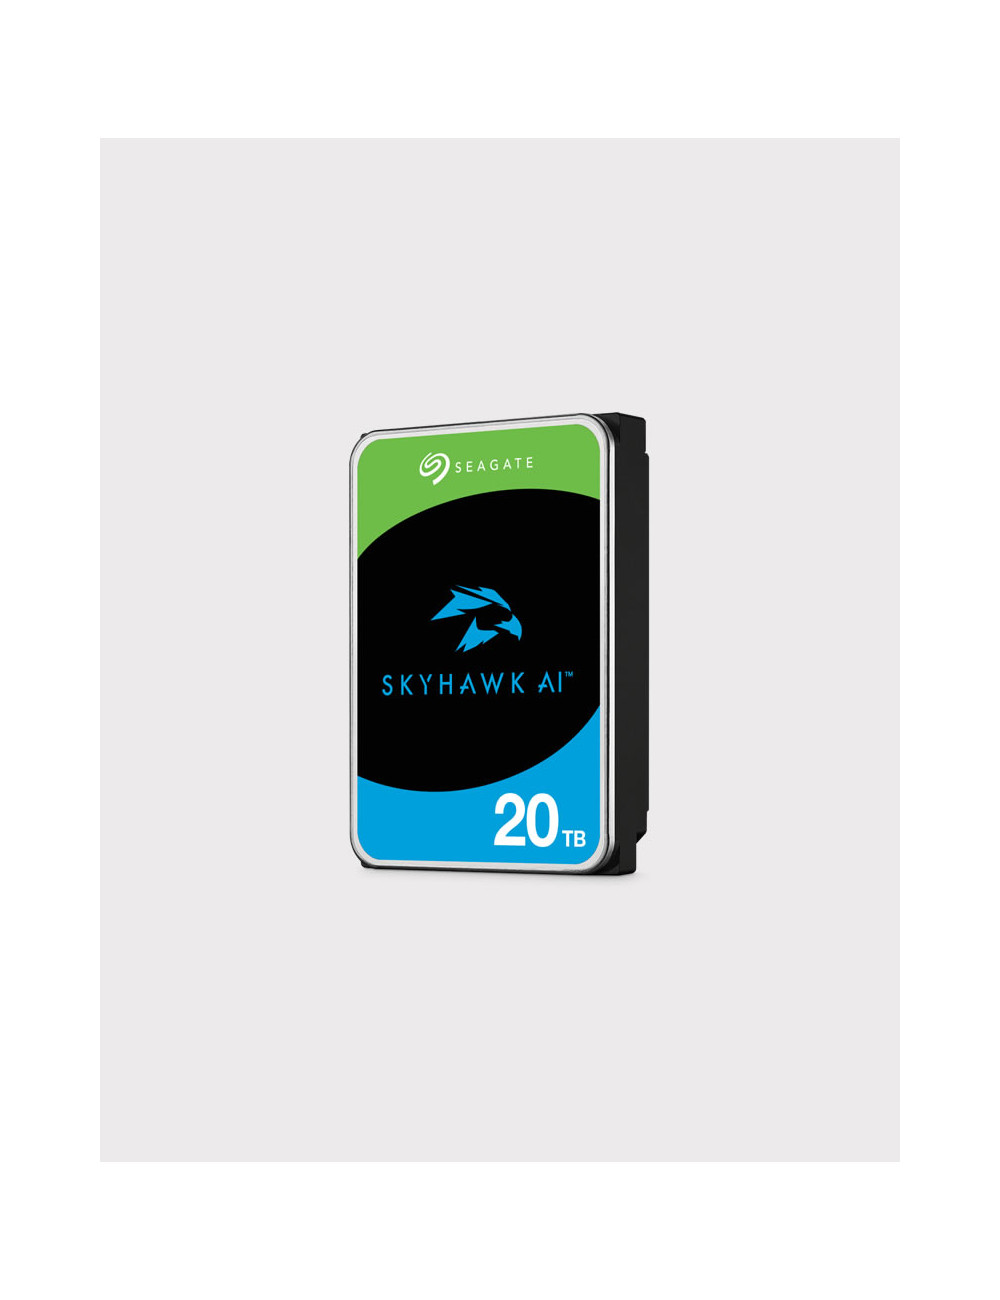 Seagate SKYHAWK AI 20TB Hard Drive HDD 3.5"